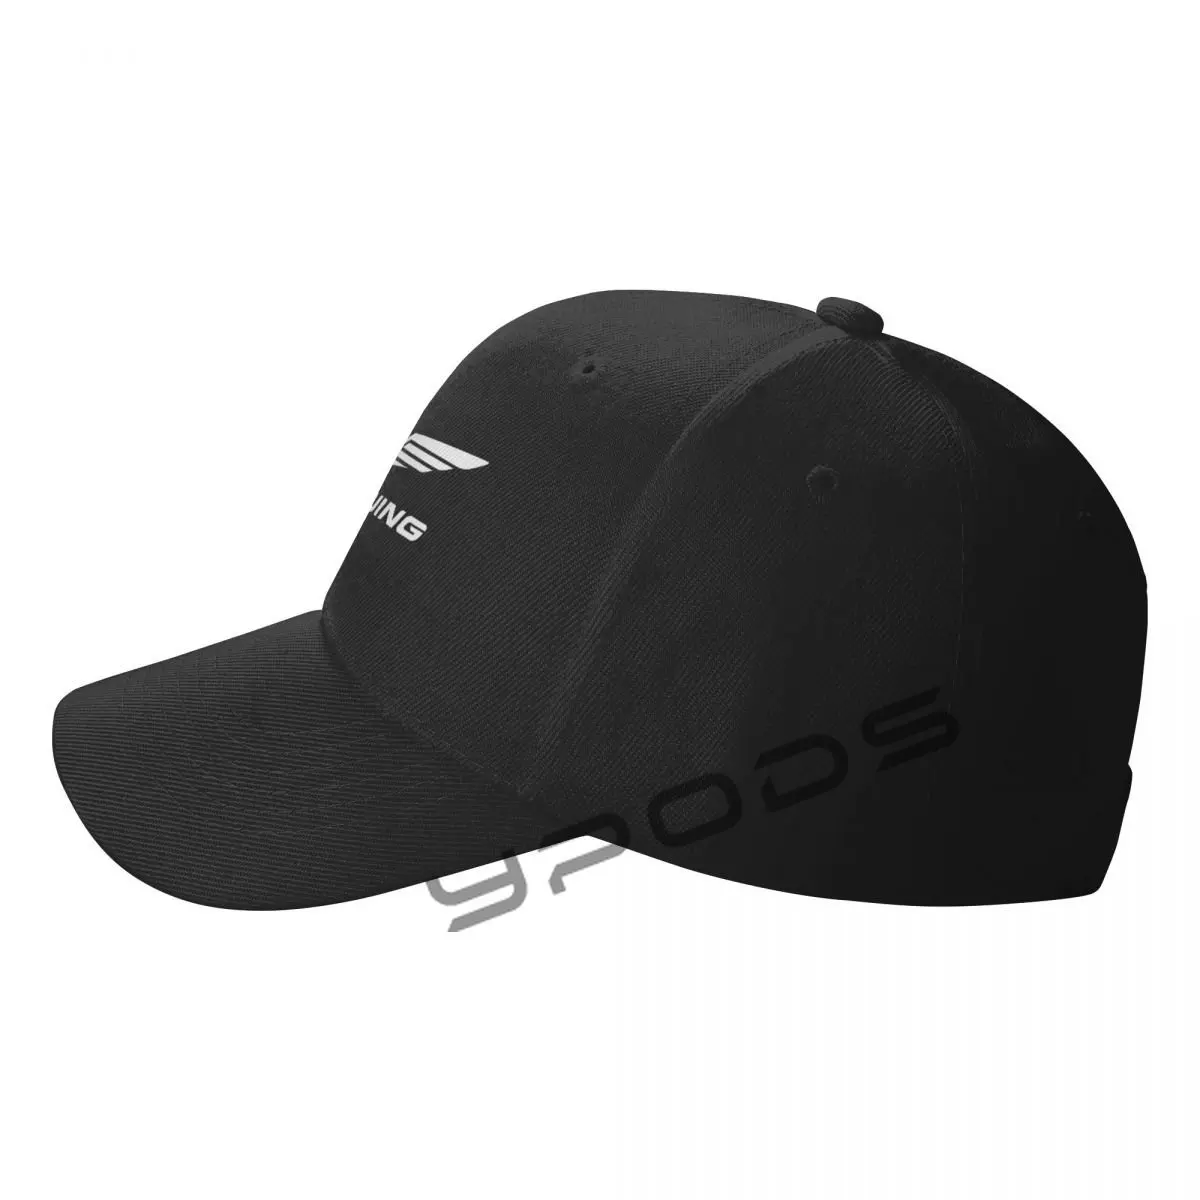 Goldwing GL1500 כובע בייסבול עבור גברים, נשים, קלאסי אבא כובע רגיל כובע פרופיל נמוך